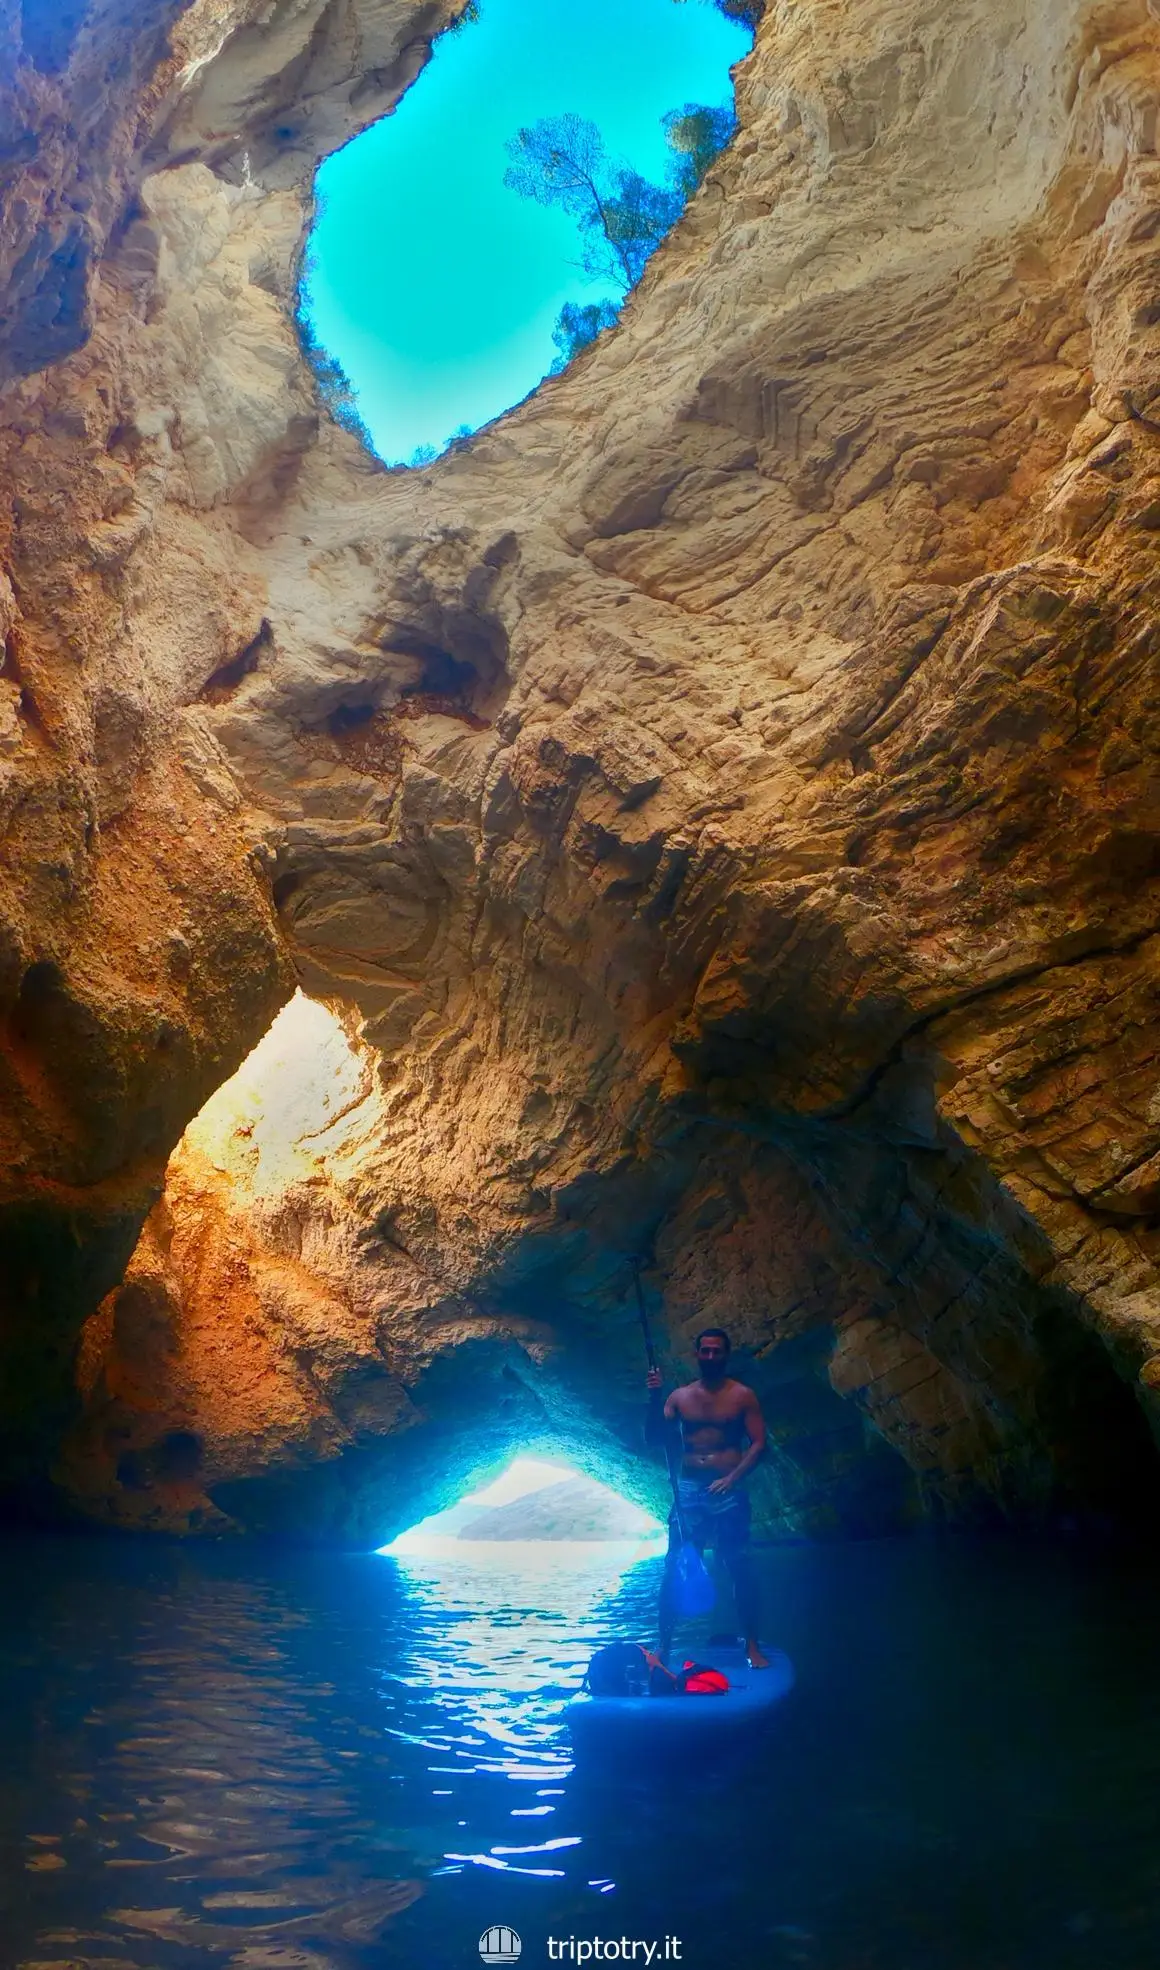 Parco Nazionale del Gargano cosa vedere - Grotta dei due occhi nel Gargano - Visit Gargano